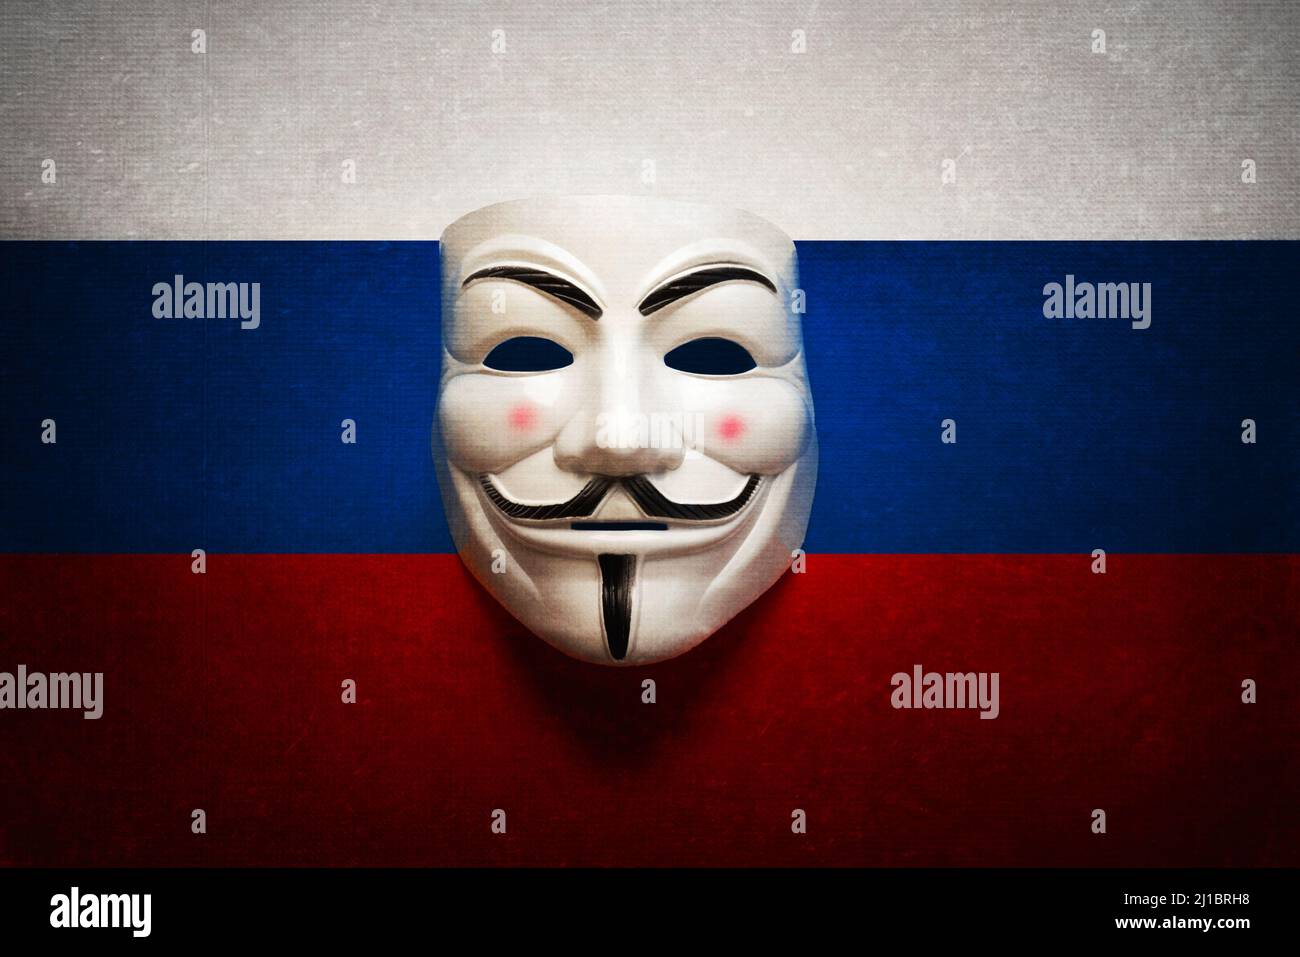 Masque hacker sur un écran d'ordinateur avec l'arrière-plan du drapeau russe. Concept de cyber-attaque Banque D'Images